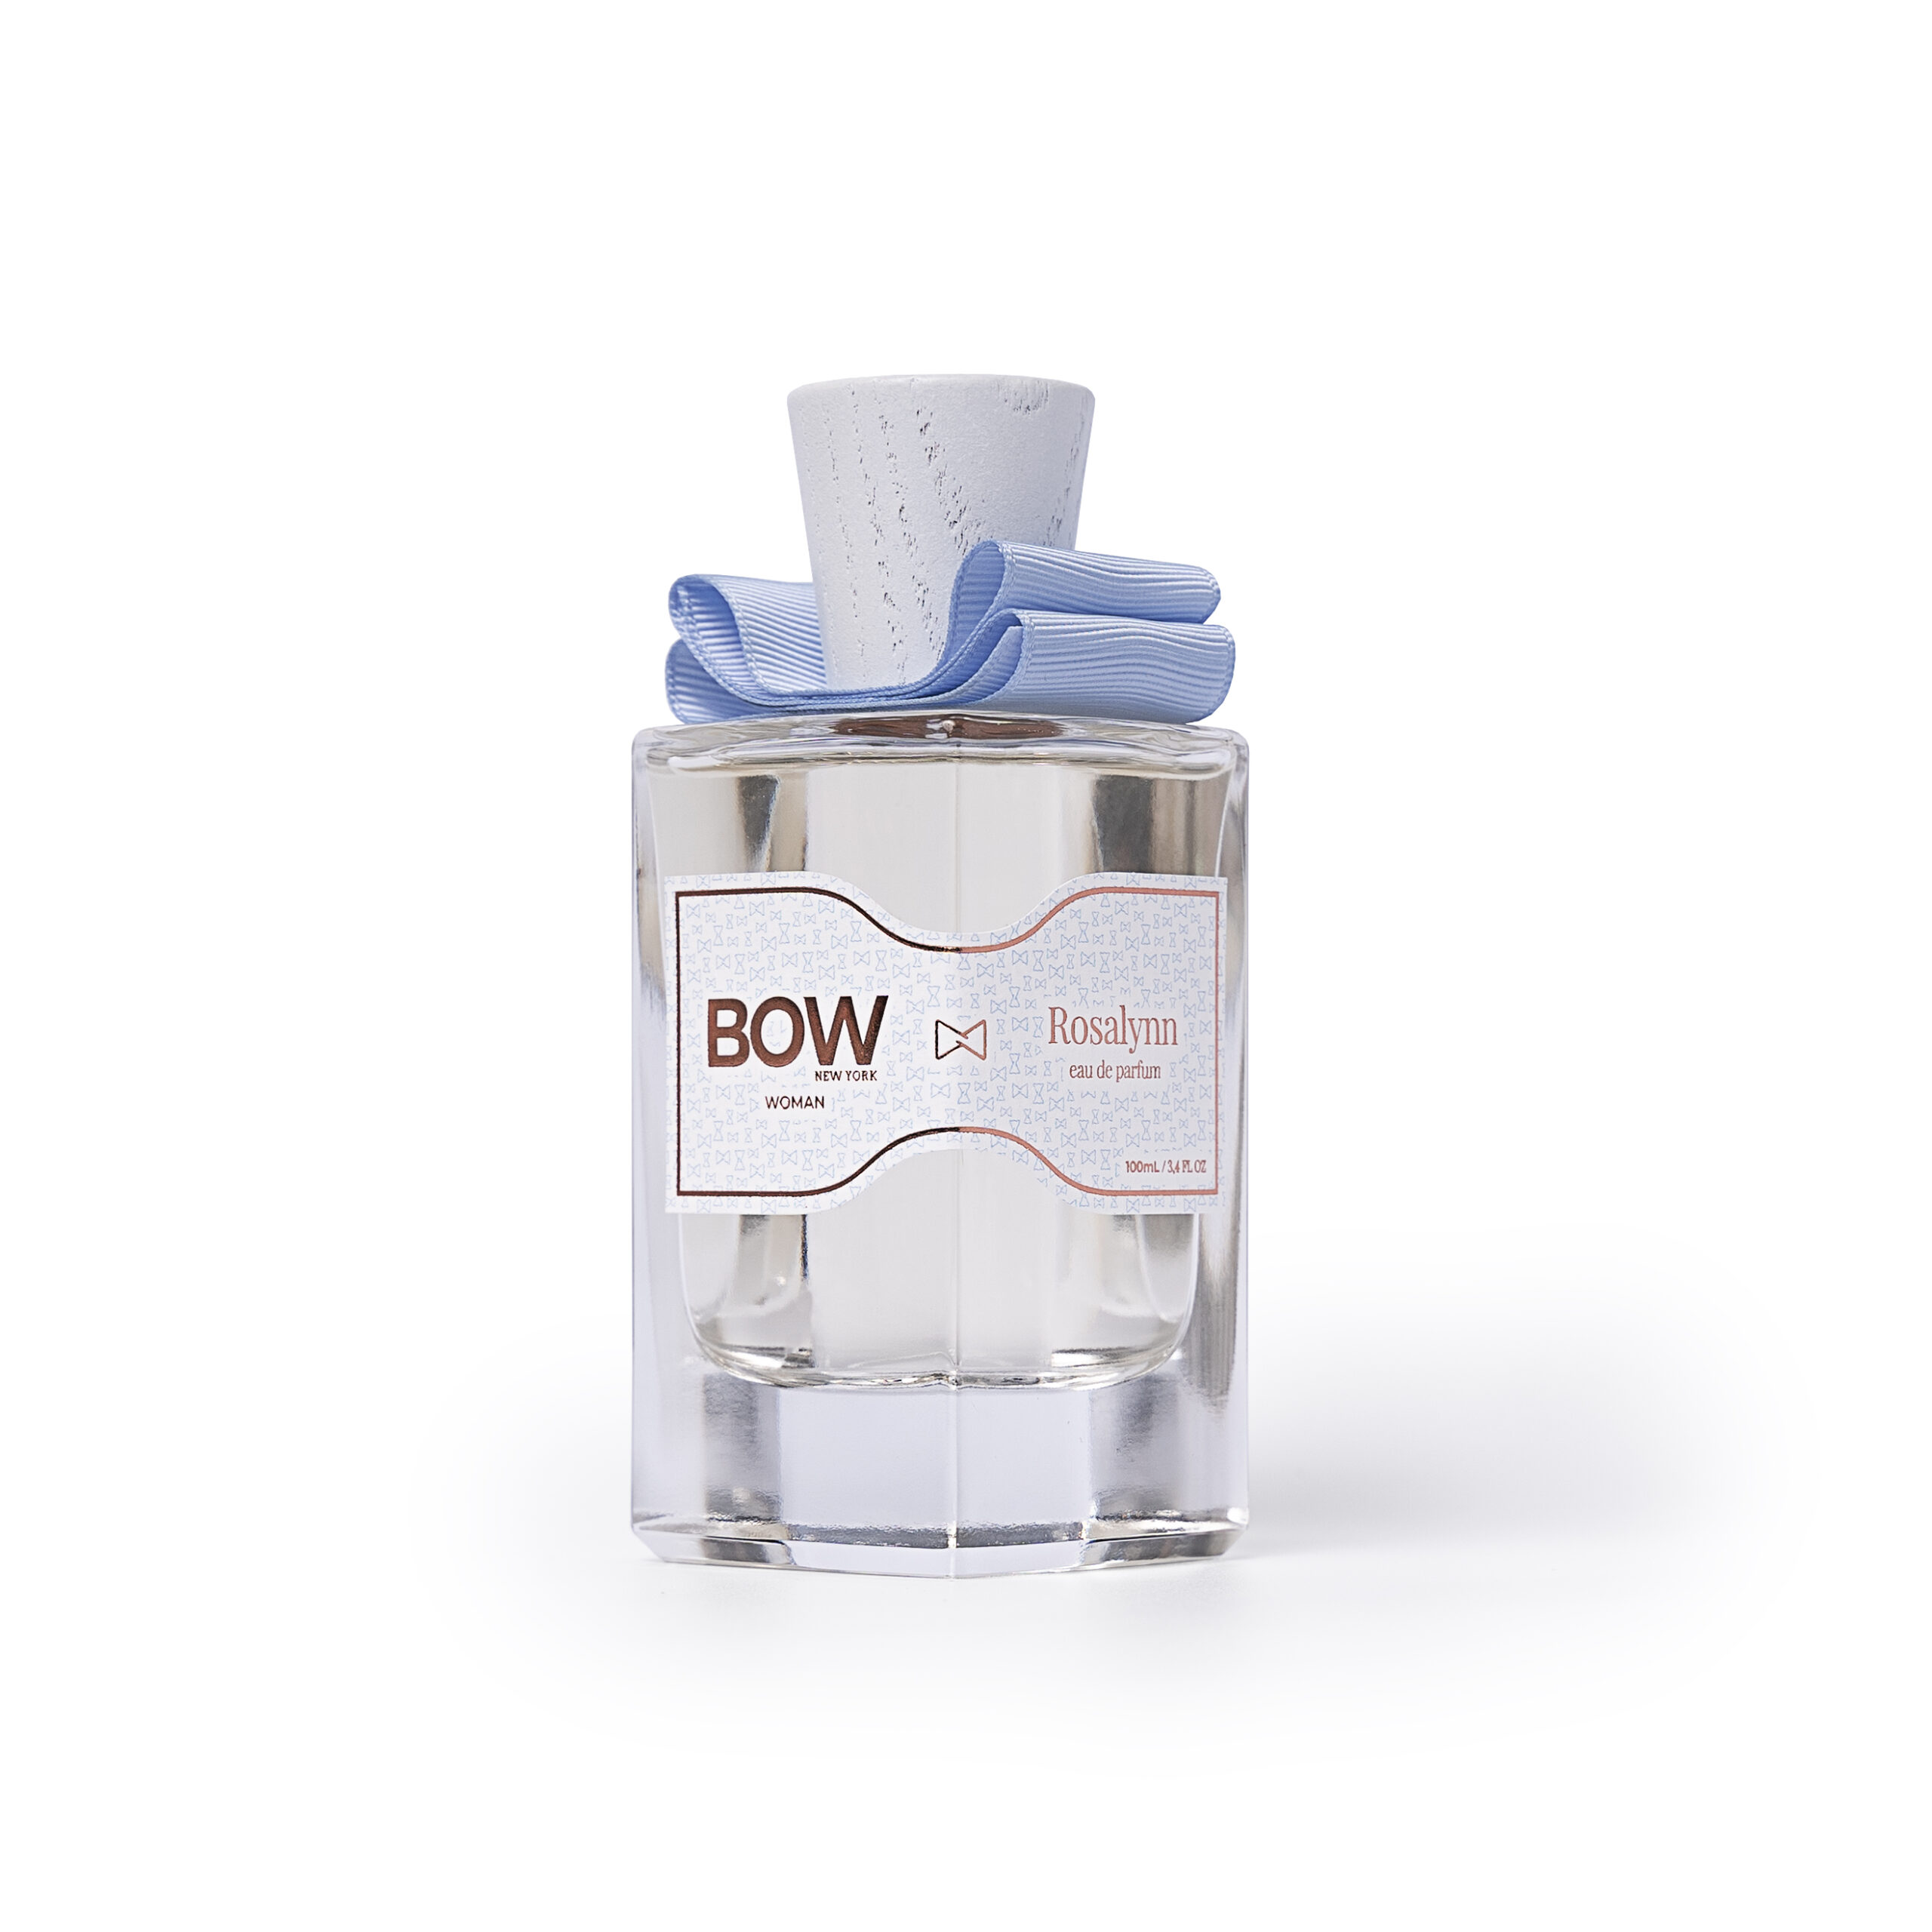 Bow Bag Rosalynn Loção Corporal 200ml + Perfume 30ml